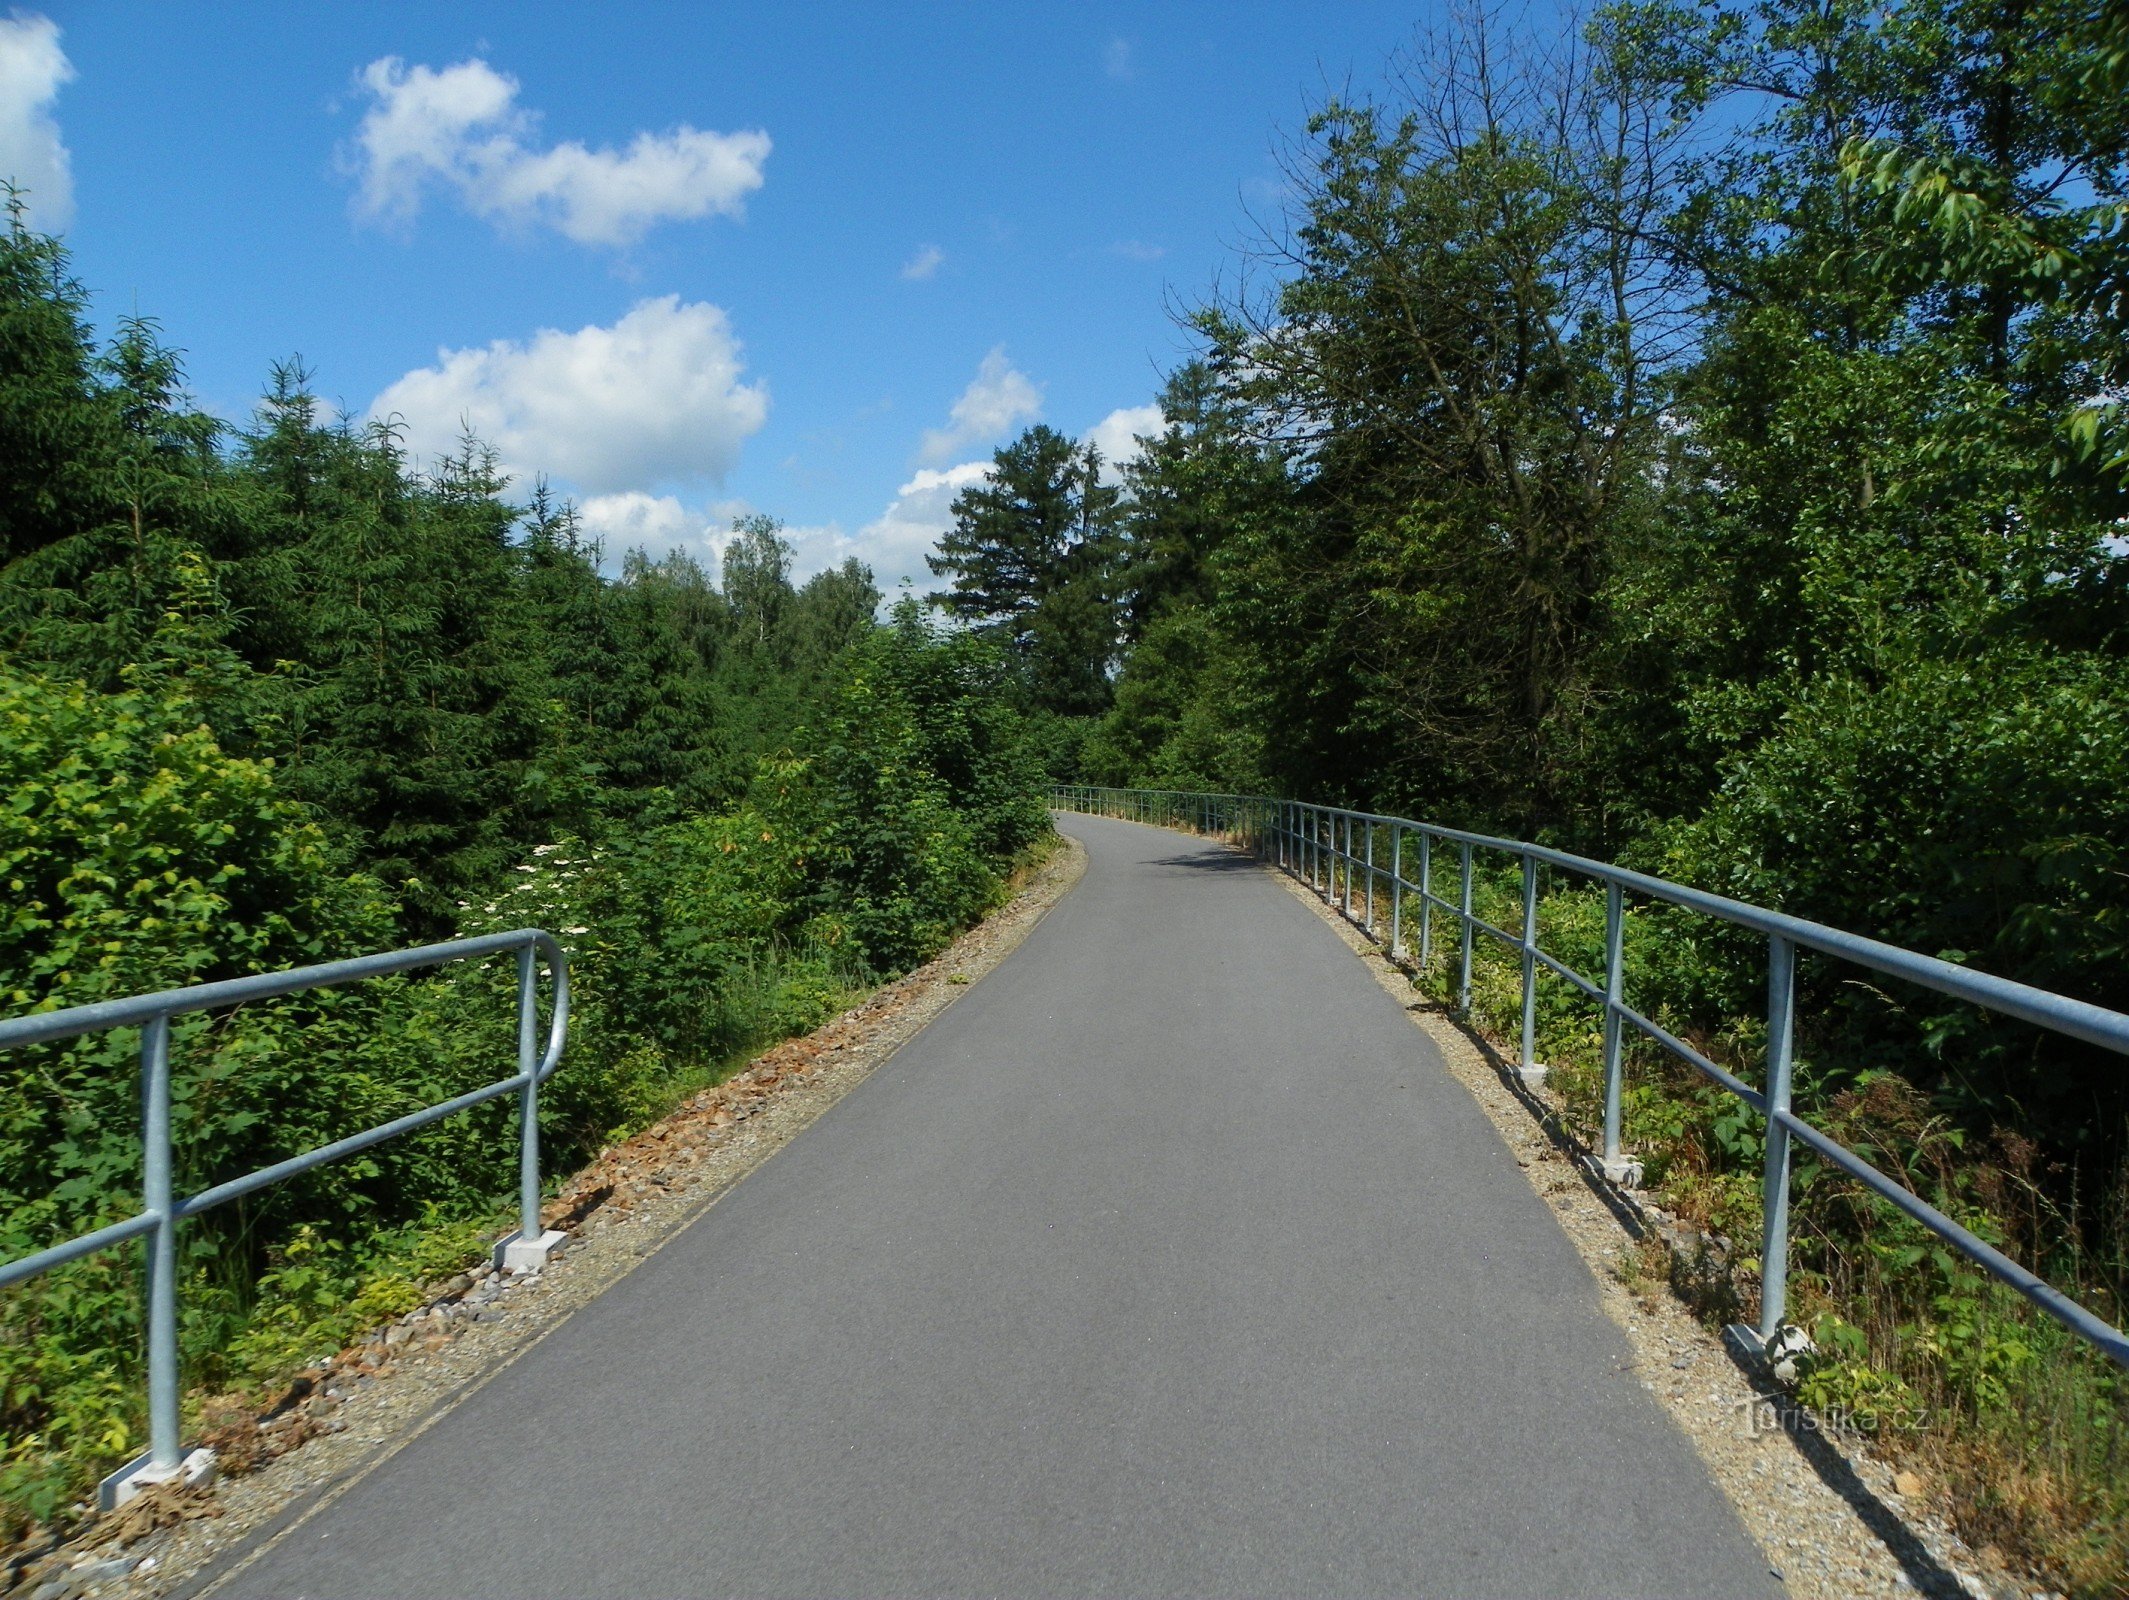 Sázava–Přibyslav cycle path